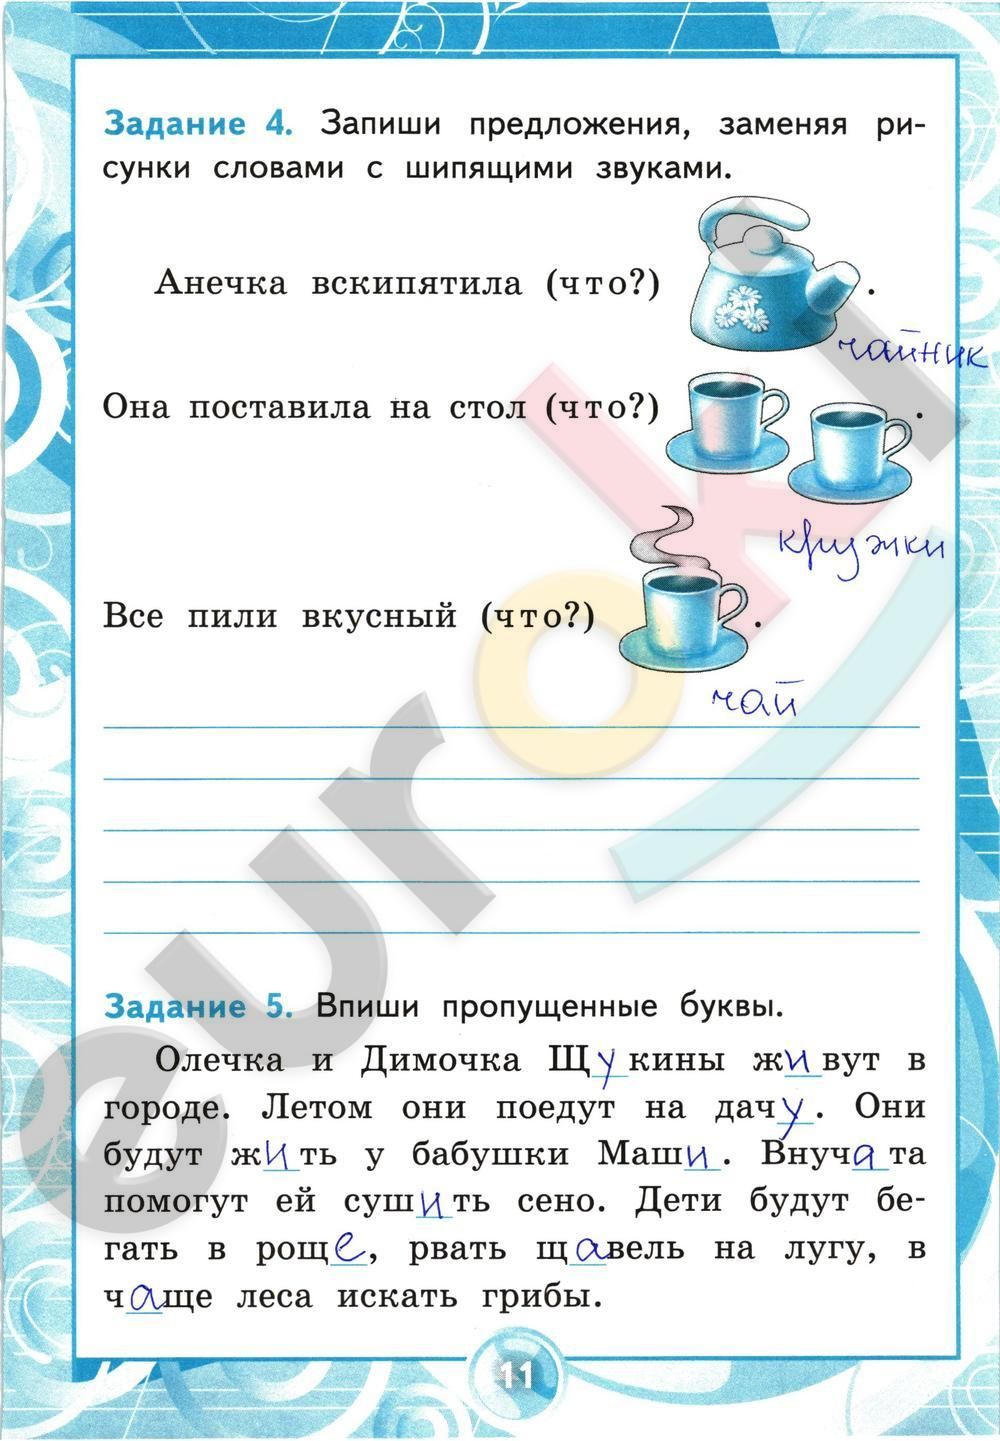 ГДЗ Русский язык 2 класс - стр. 11